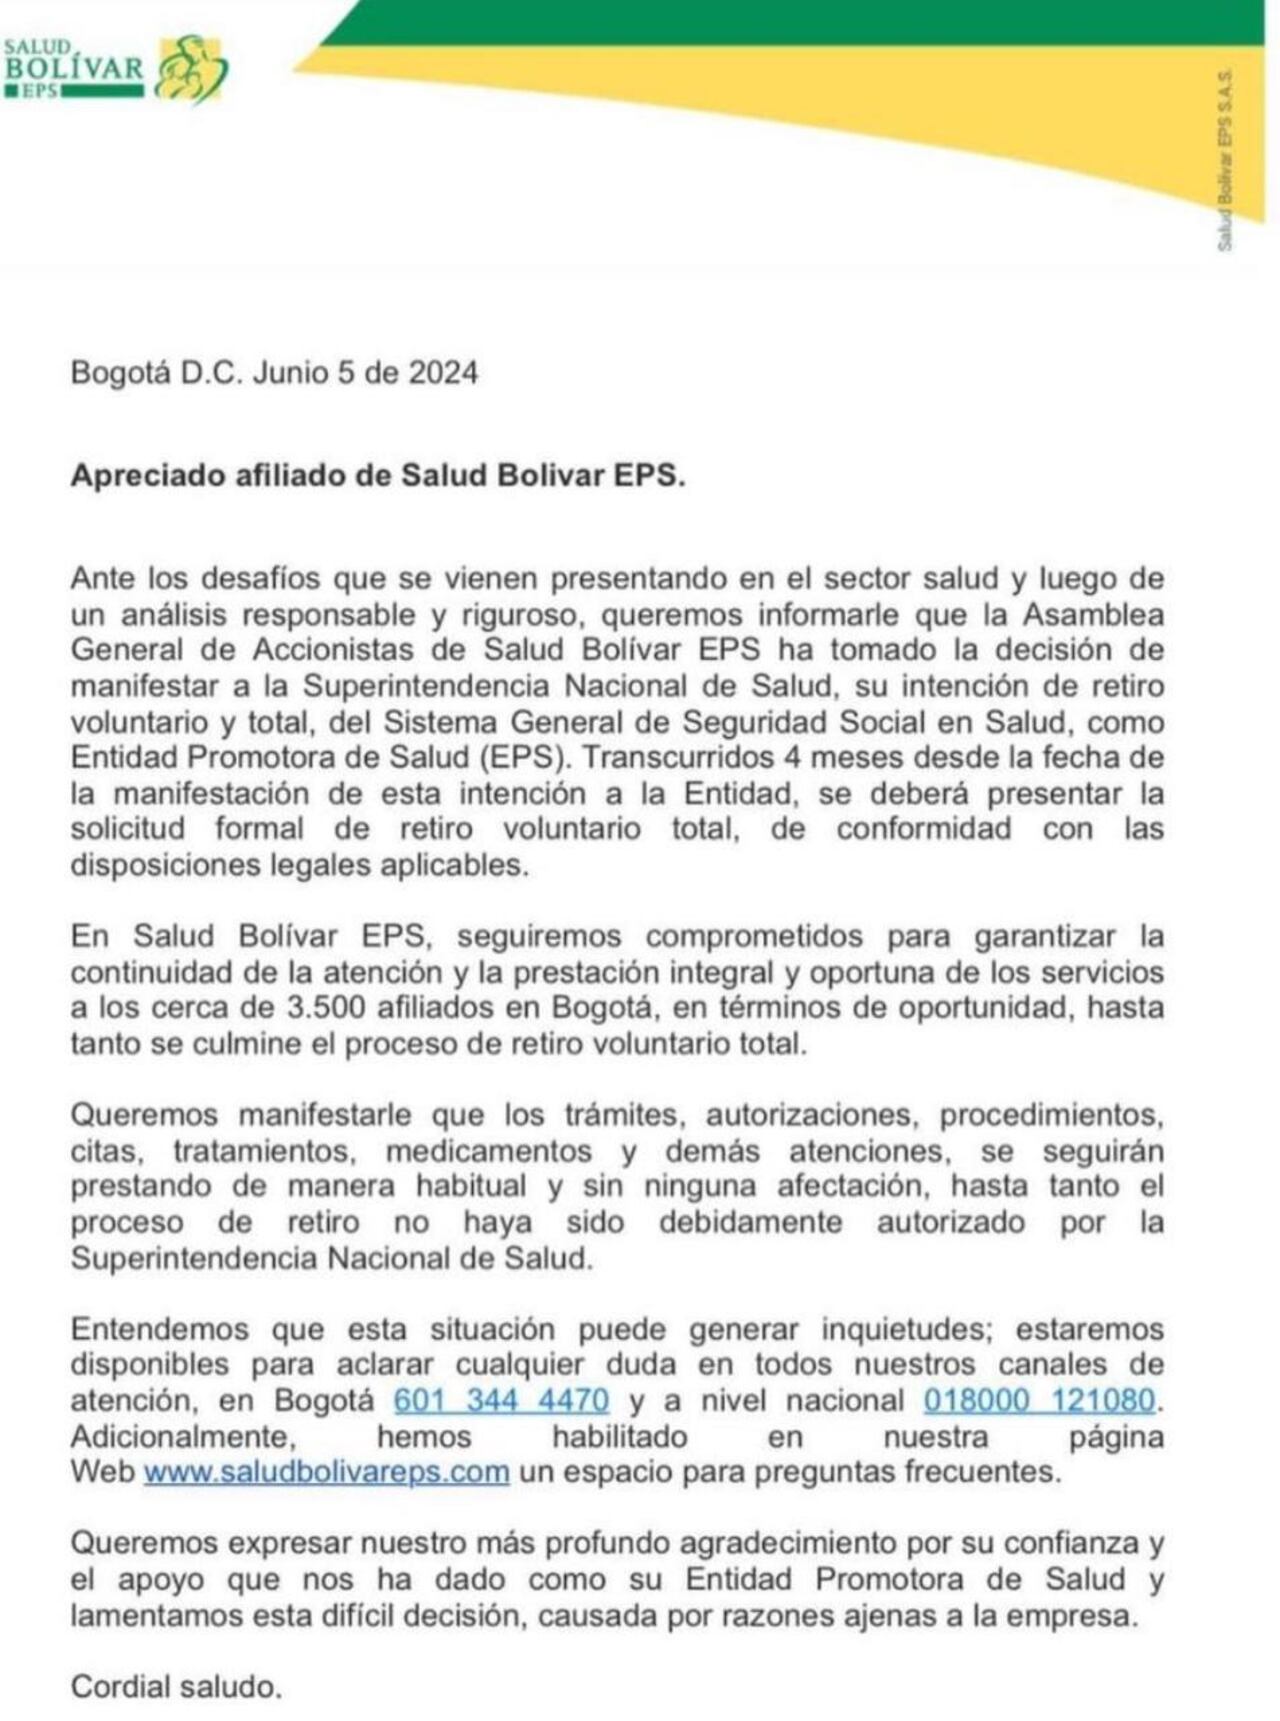 Esta es la carta que los afiliados a la EPS recibieron en sus correos electrónicos.